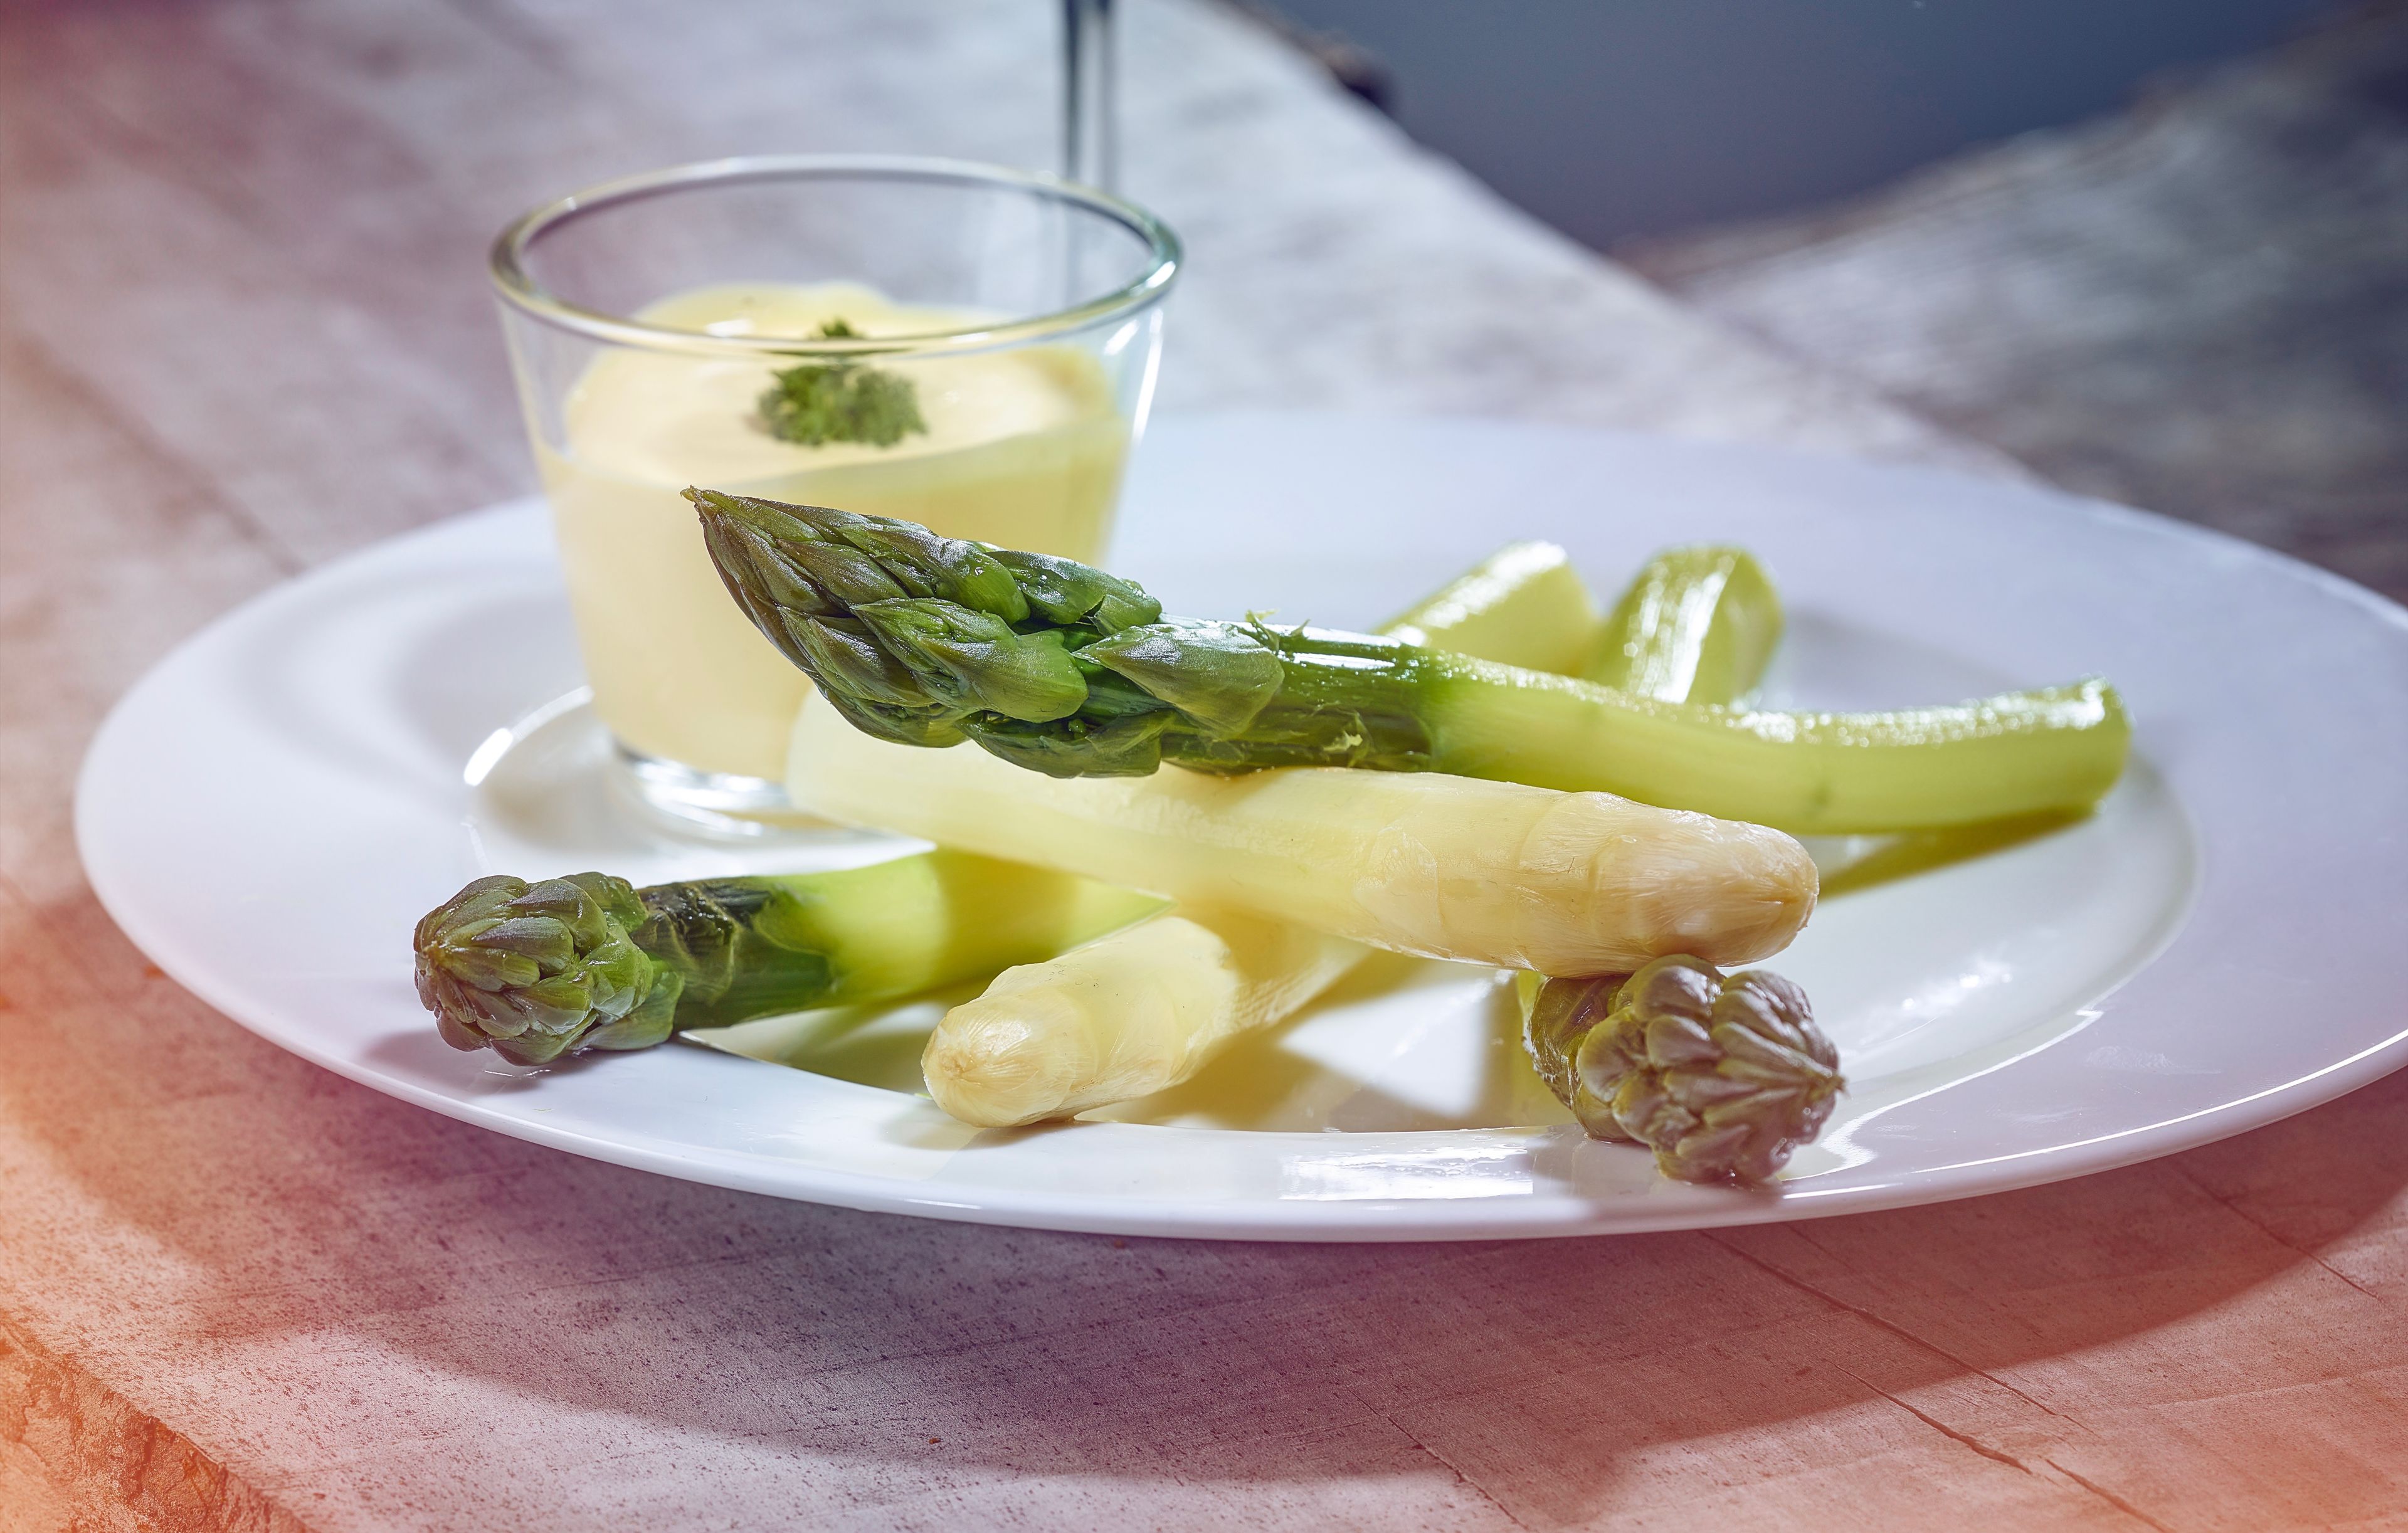 Asparagus on a plate with sauce